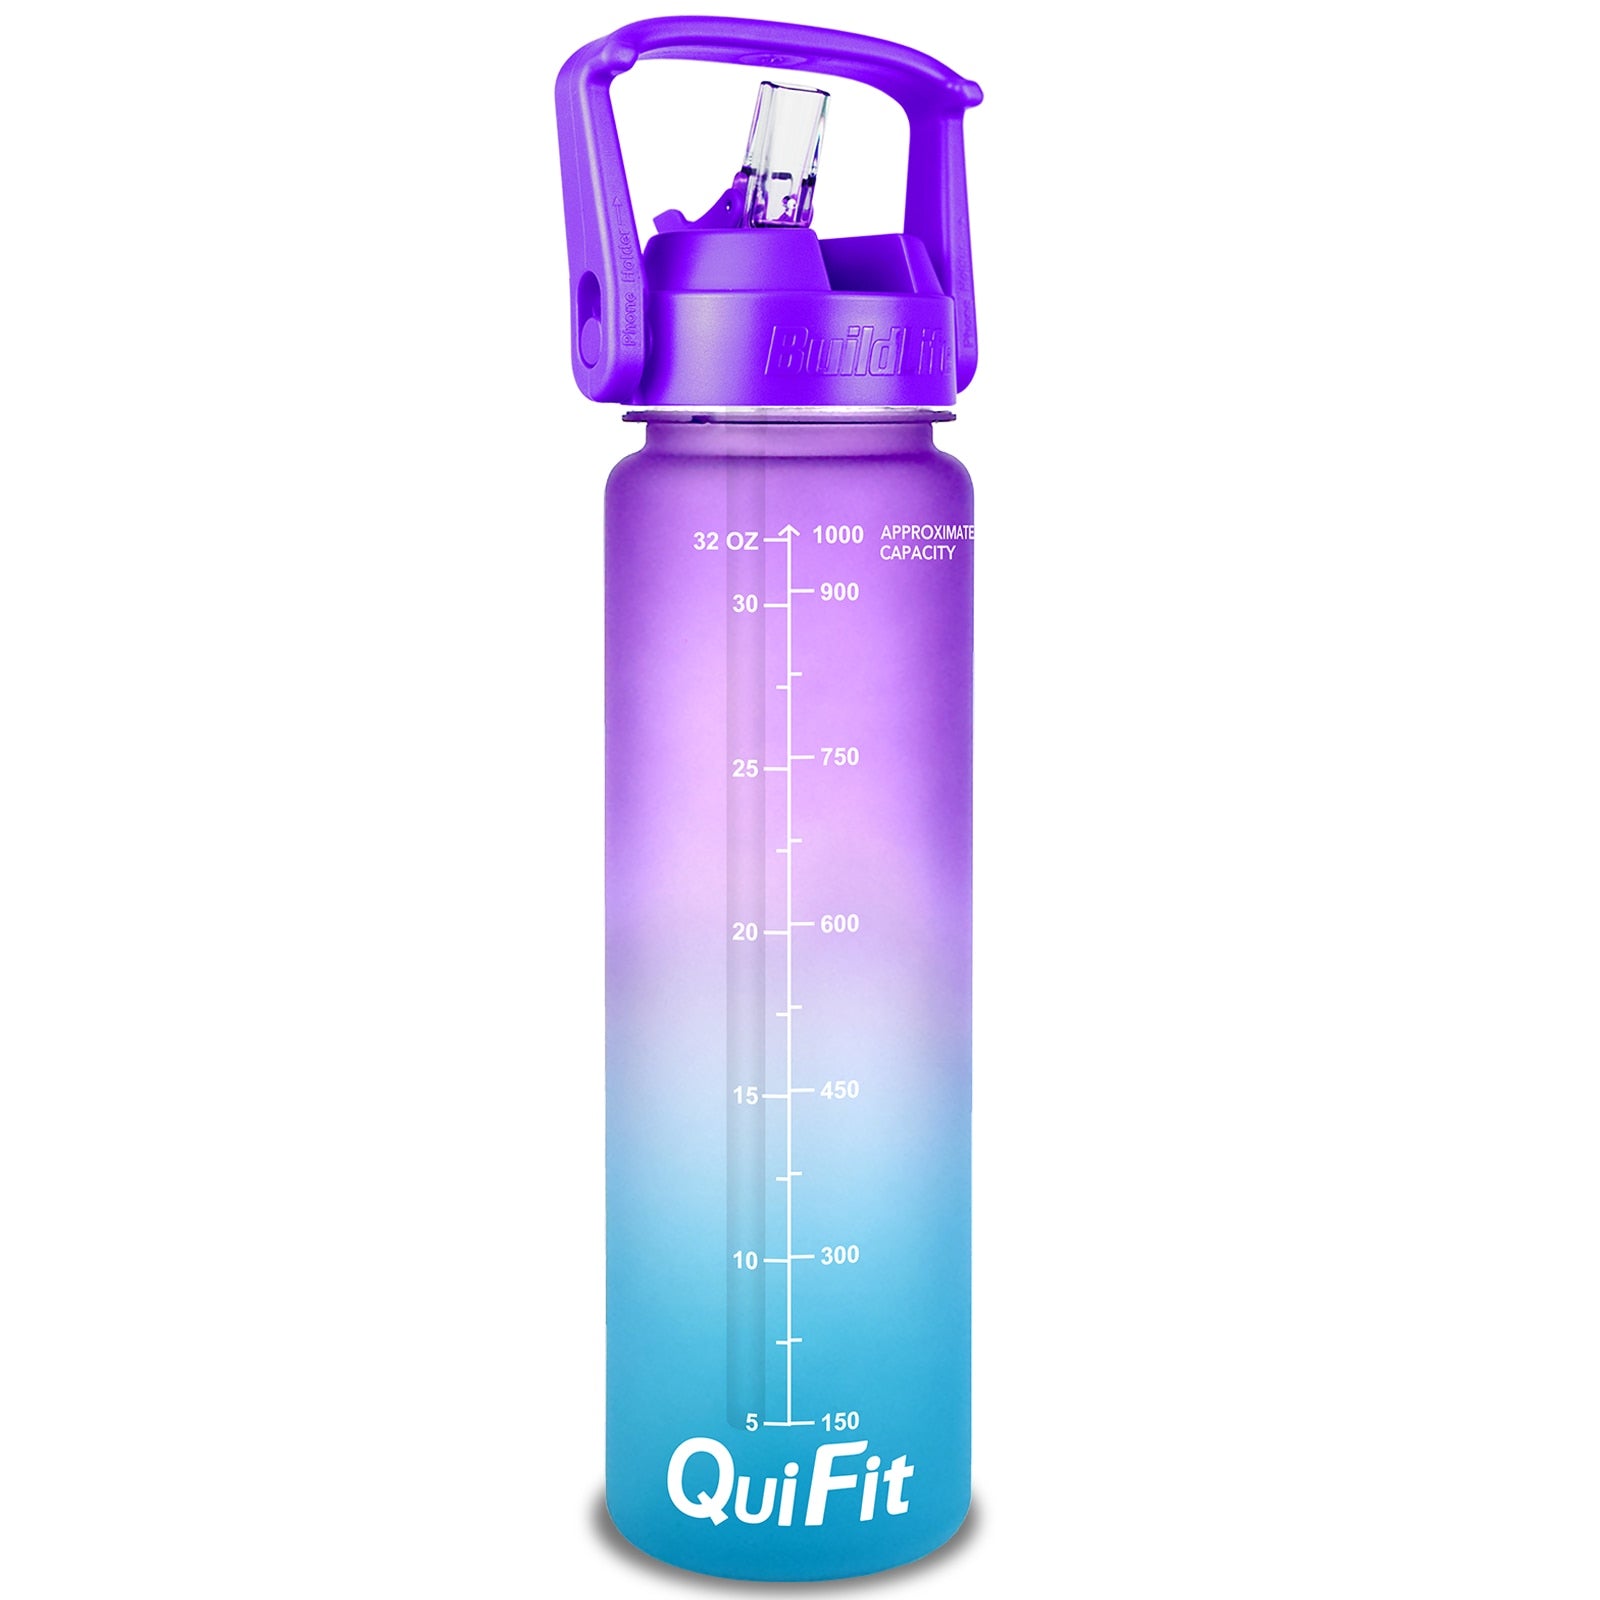 Eine Sporttrinkflasche mit einem Farbverlauf von Violett zu Blau, ausgestattet mit einem grossen Henkel und mit Zeitmarkierungen zur Fluessigkeitsueberwachung. Unten ist das Markenlogo "QuiFit" zu sehen.